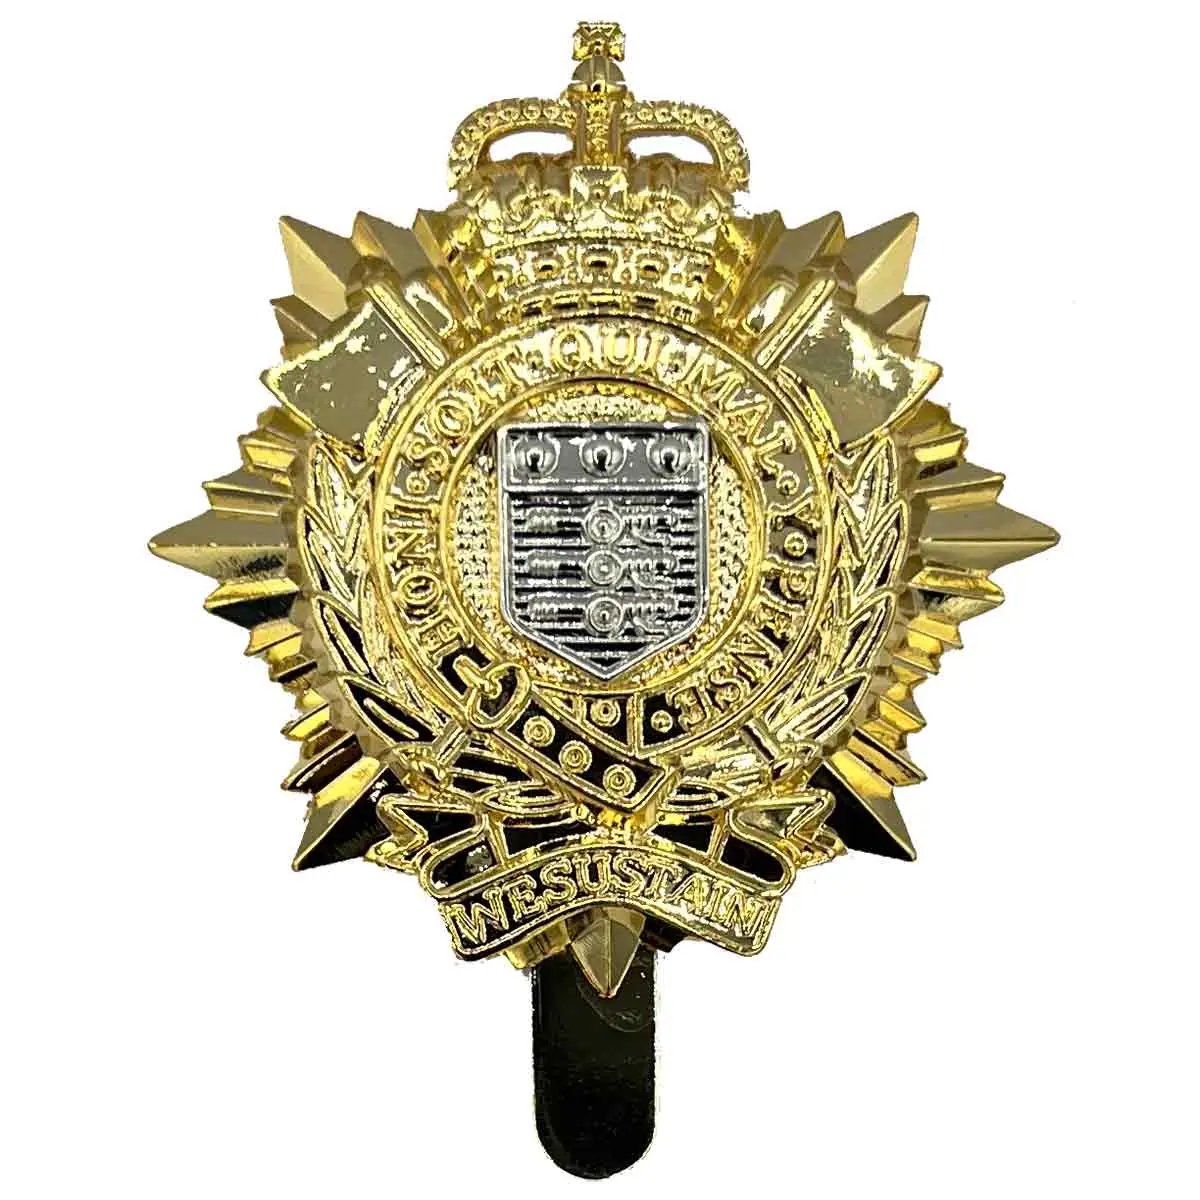 Royal Logistic Corps Beret Cap Badge - John Bull Clothing